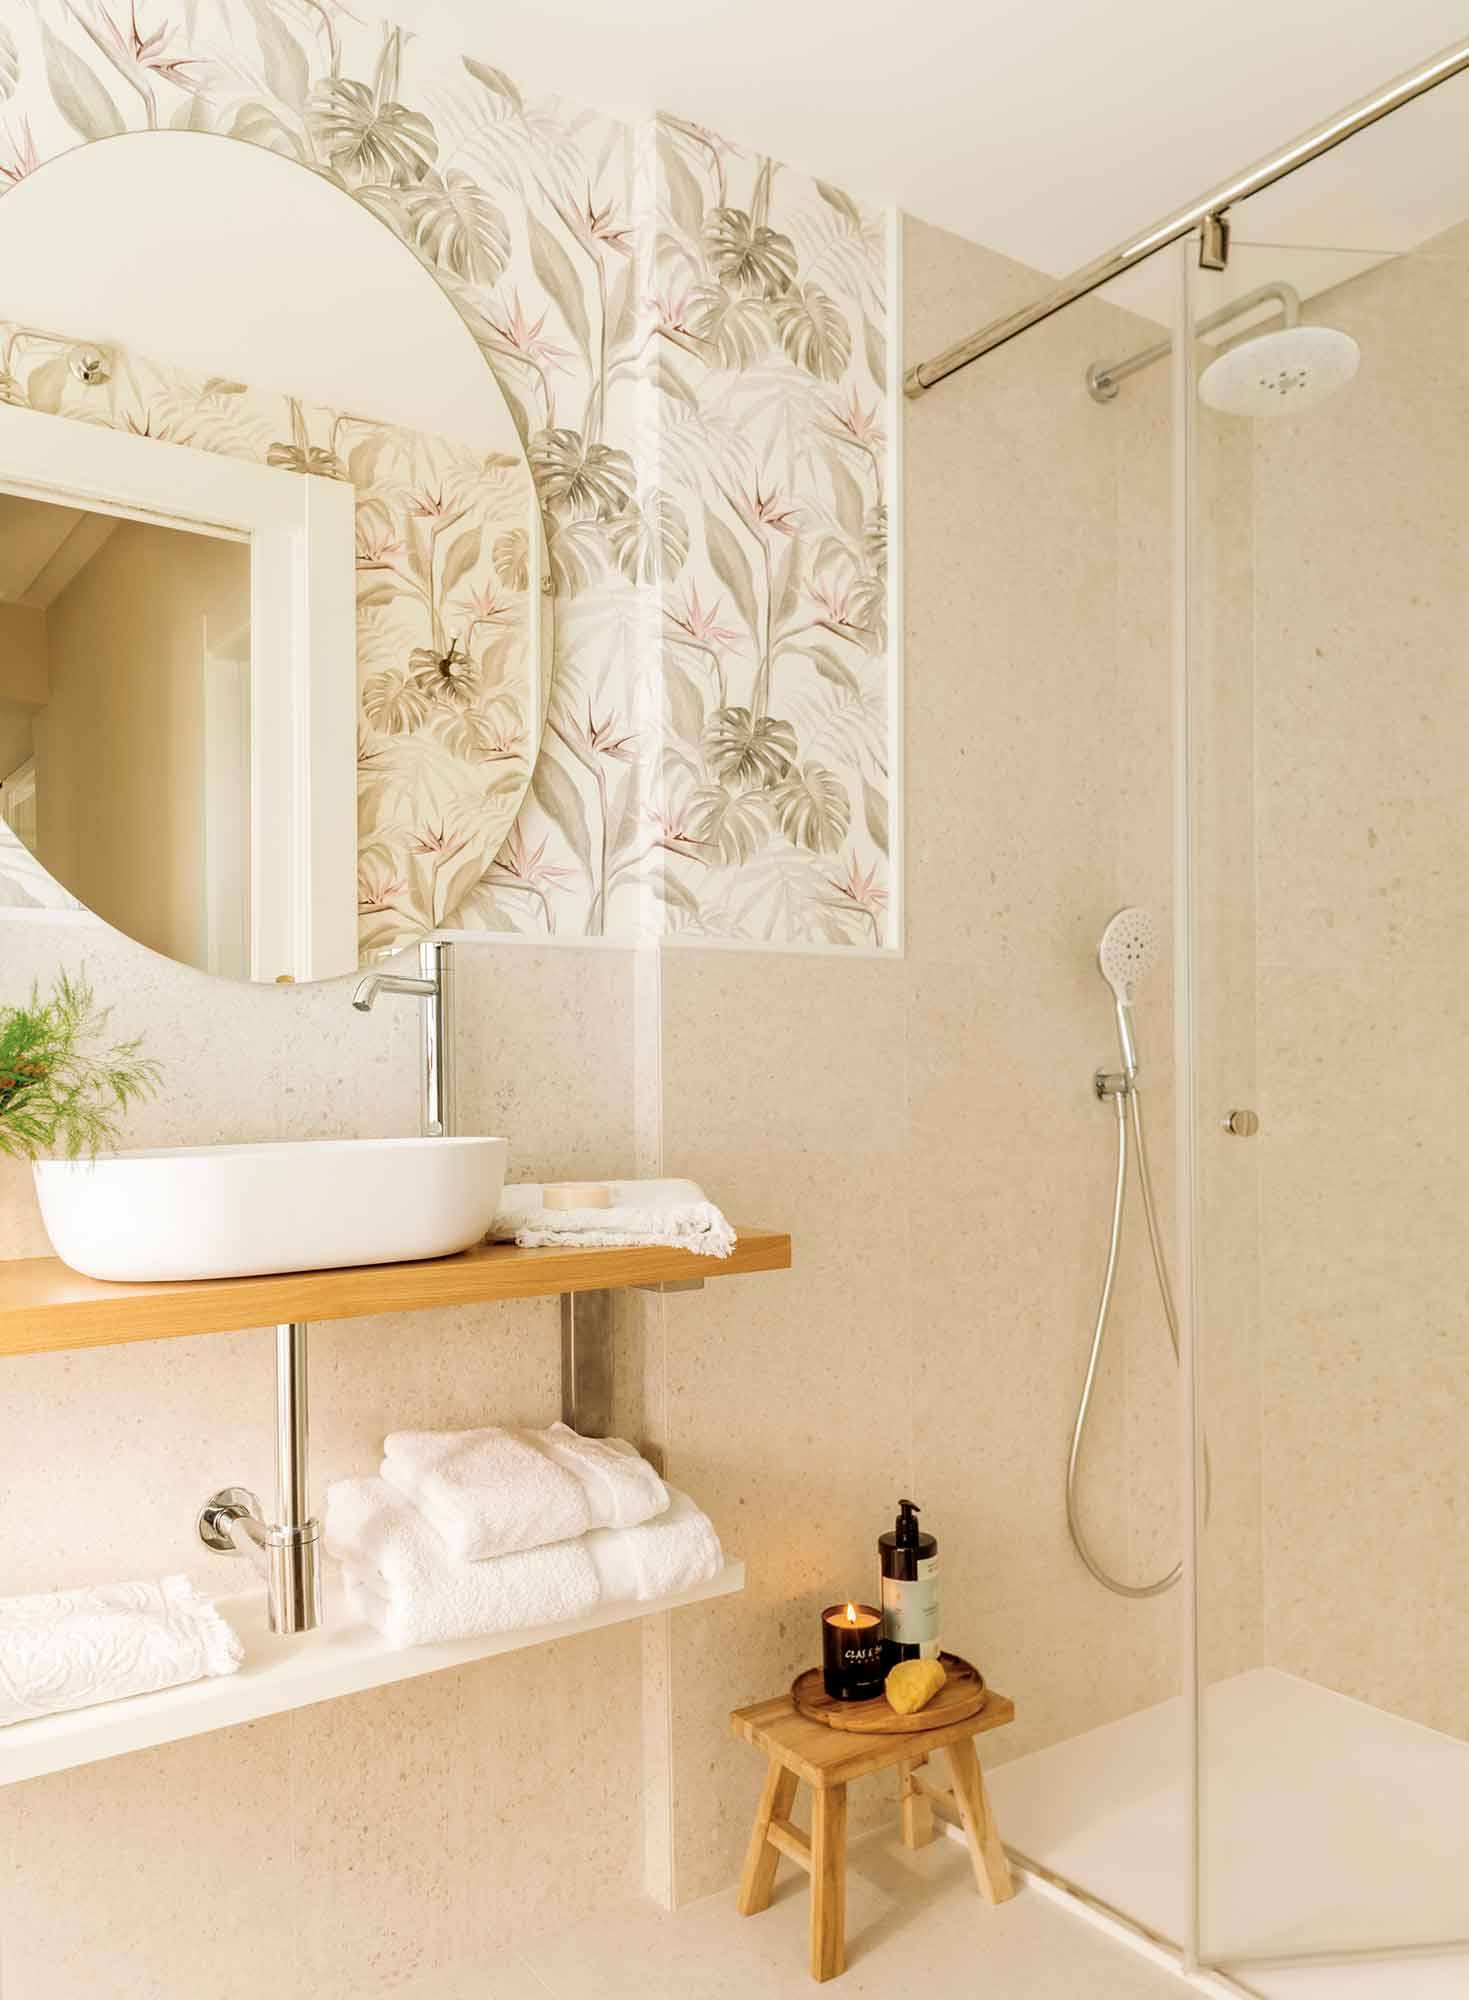 Baño pequeño con papel pintado y espejo ovalado sin marco. 